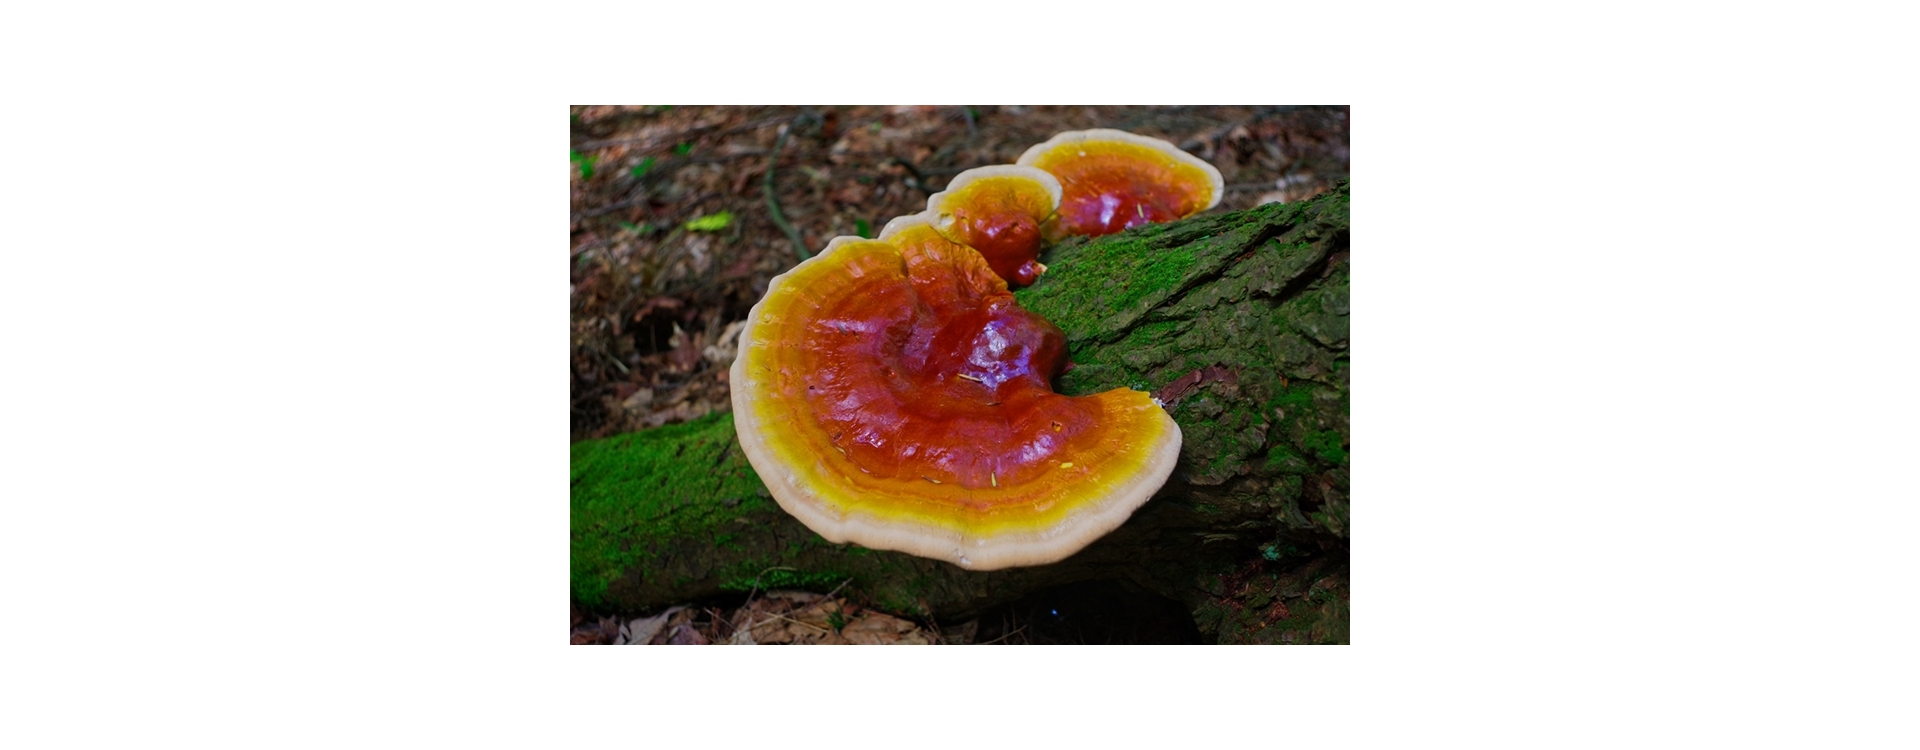 Maak kennis met reishi, de paddenstoel der onsterfelijkheid | Uit onze serie ‘Medicinale Paddenstoelen’